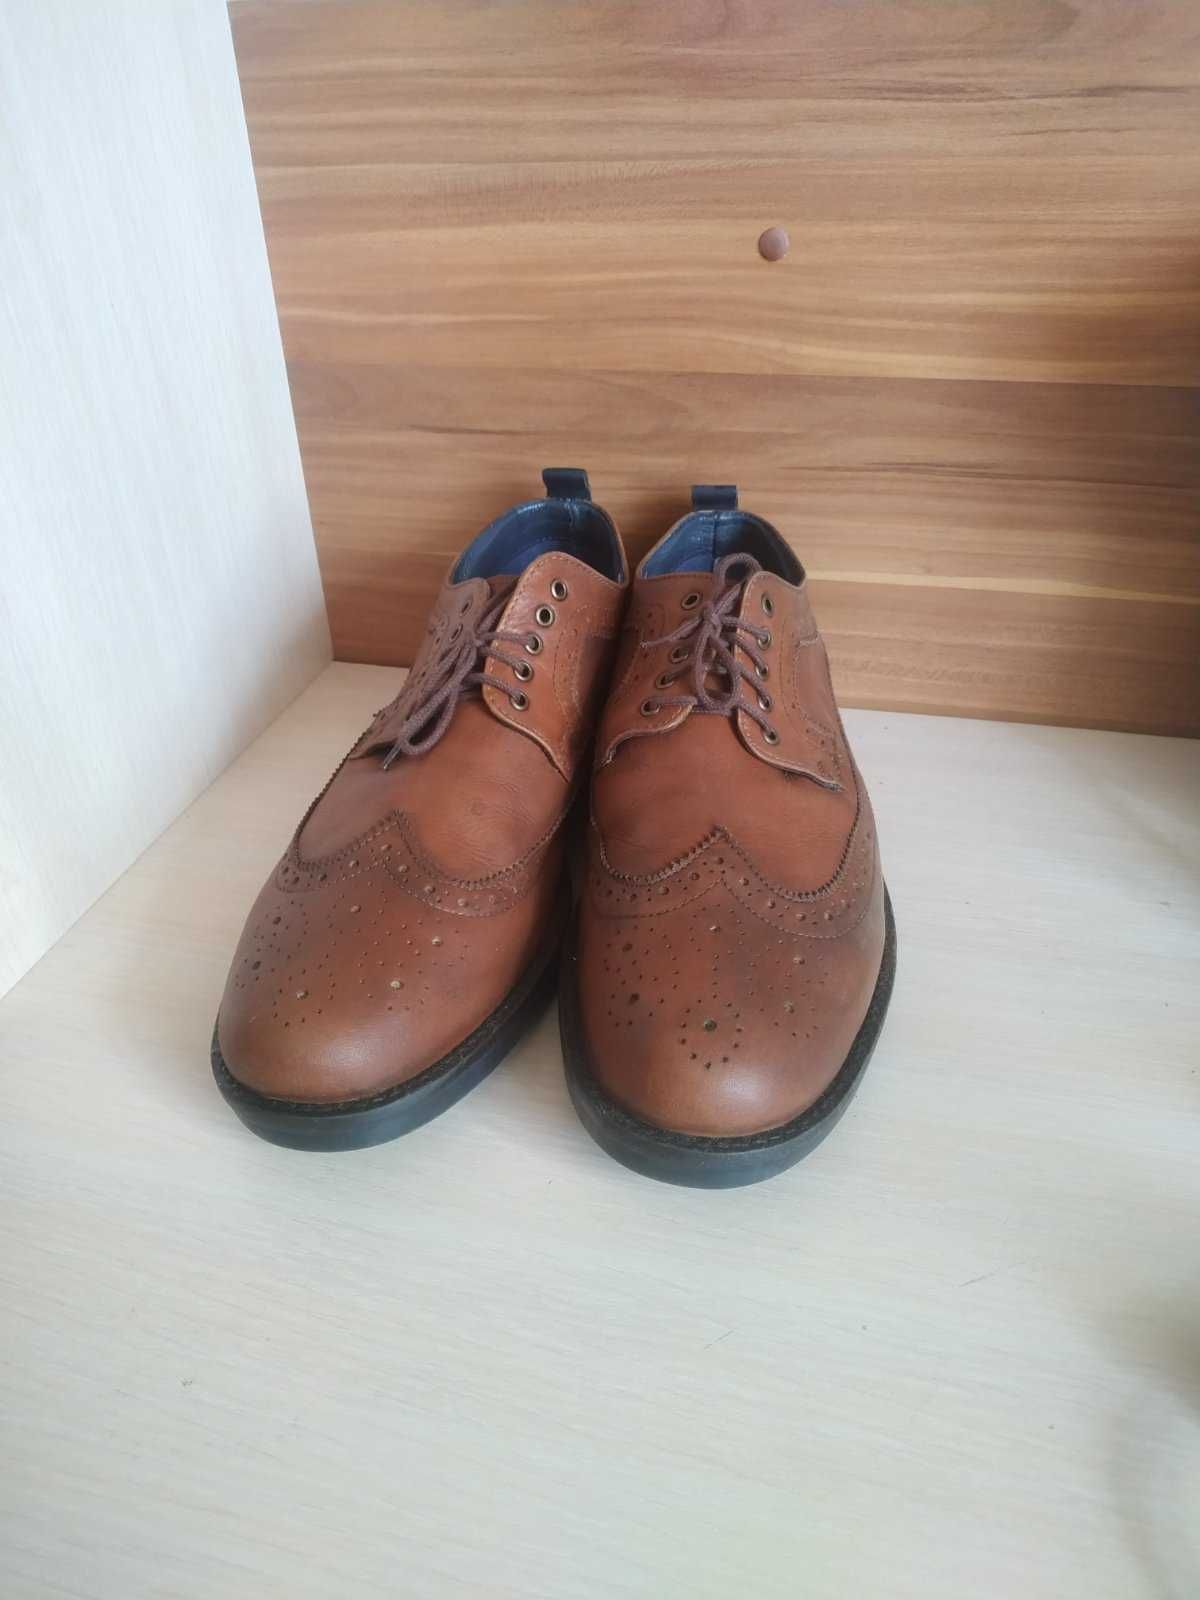 Мужские кожаные туфли броги Jones Bootmaker, Индия, р. 45 (29,5 см)